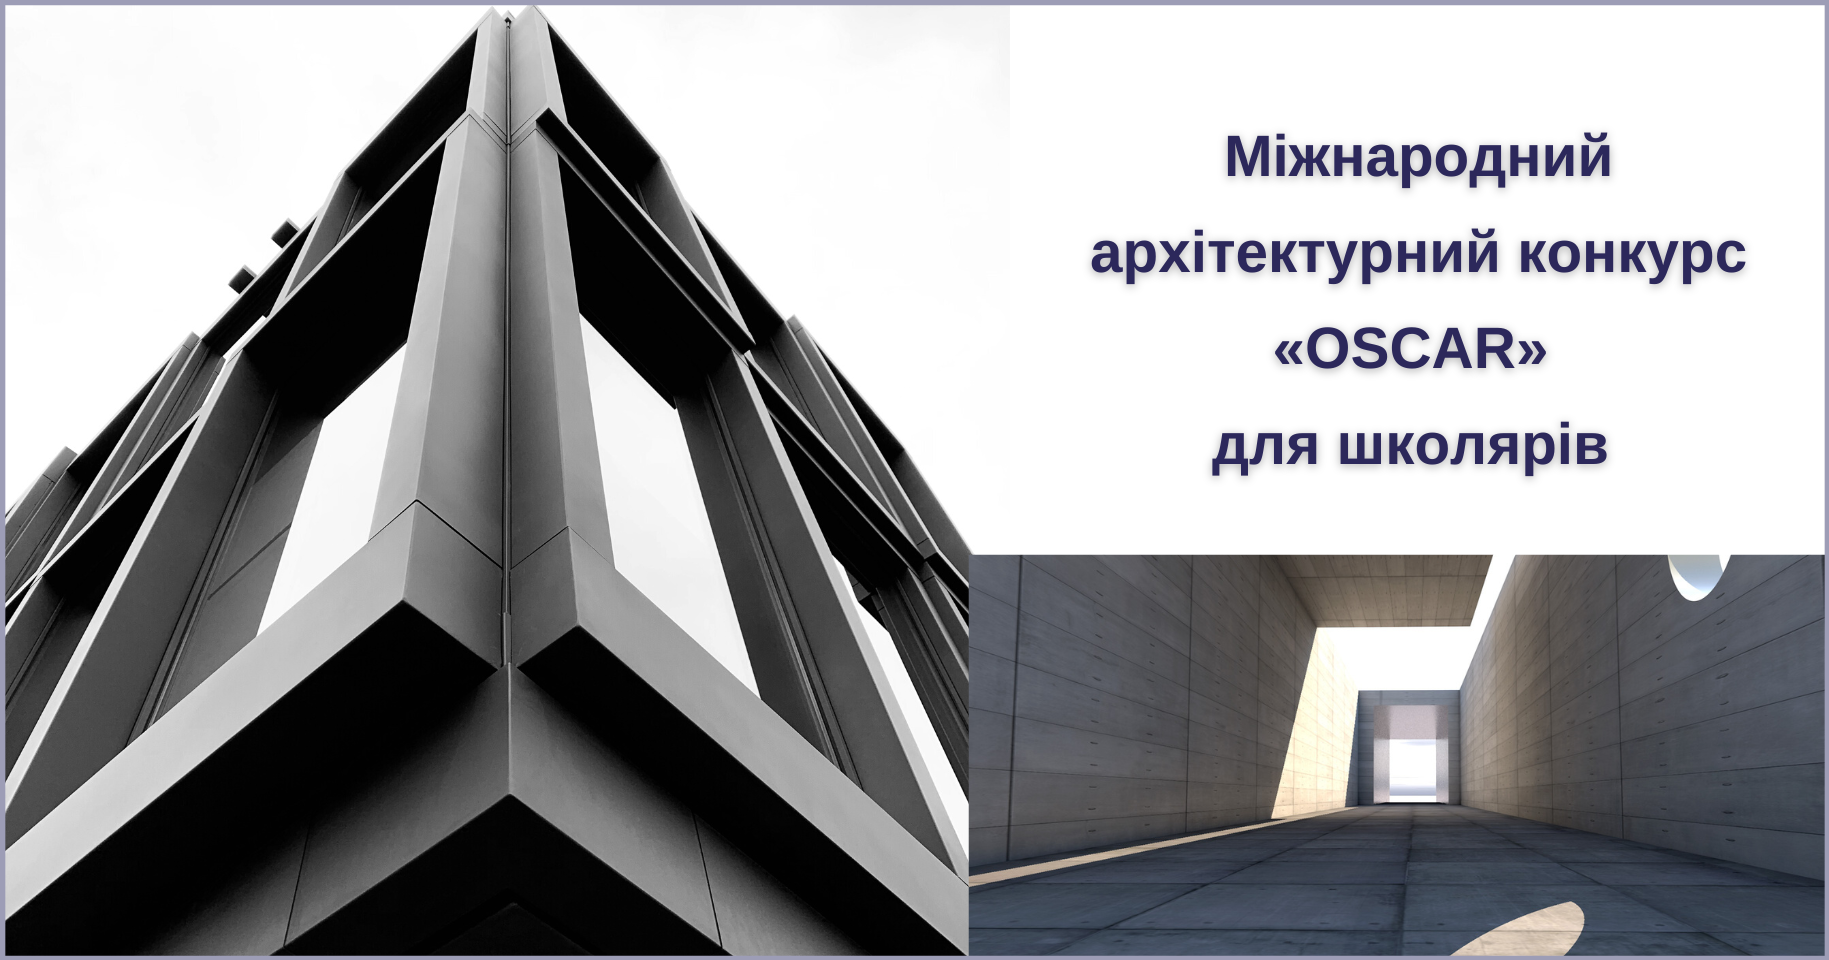 Міжнародний архітектурний конкурс «OSCAR» для школярів